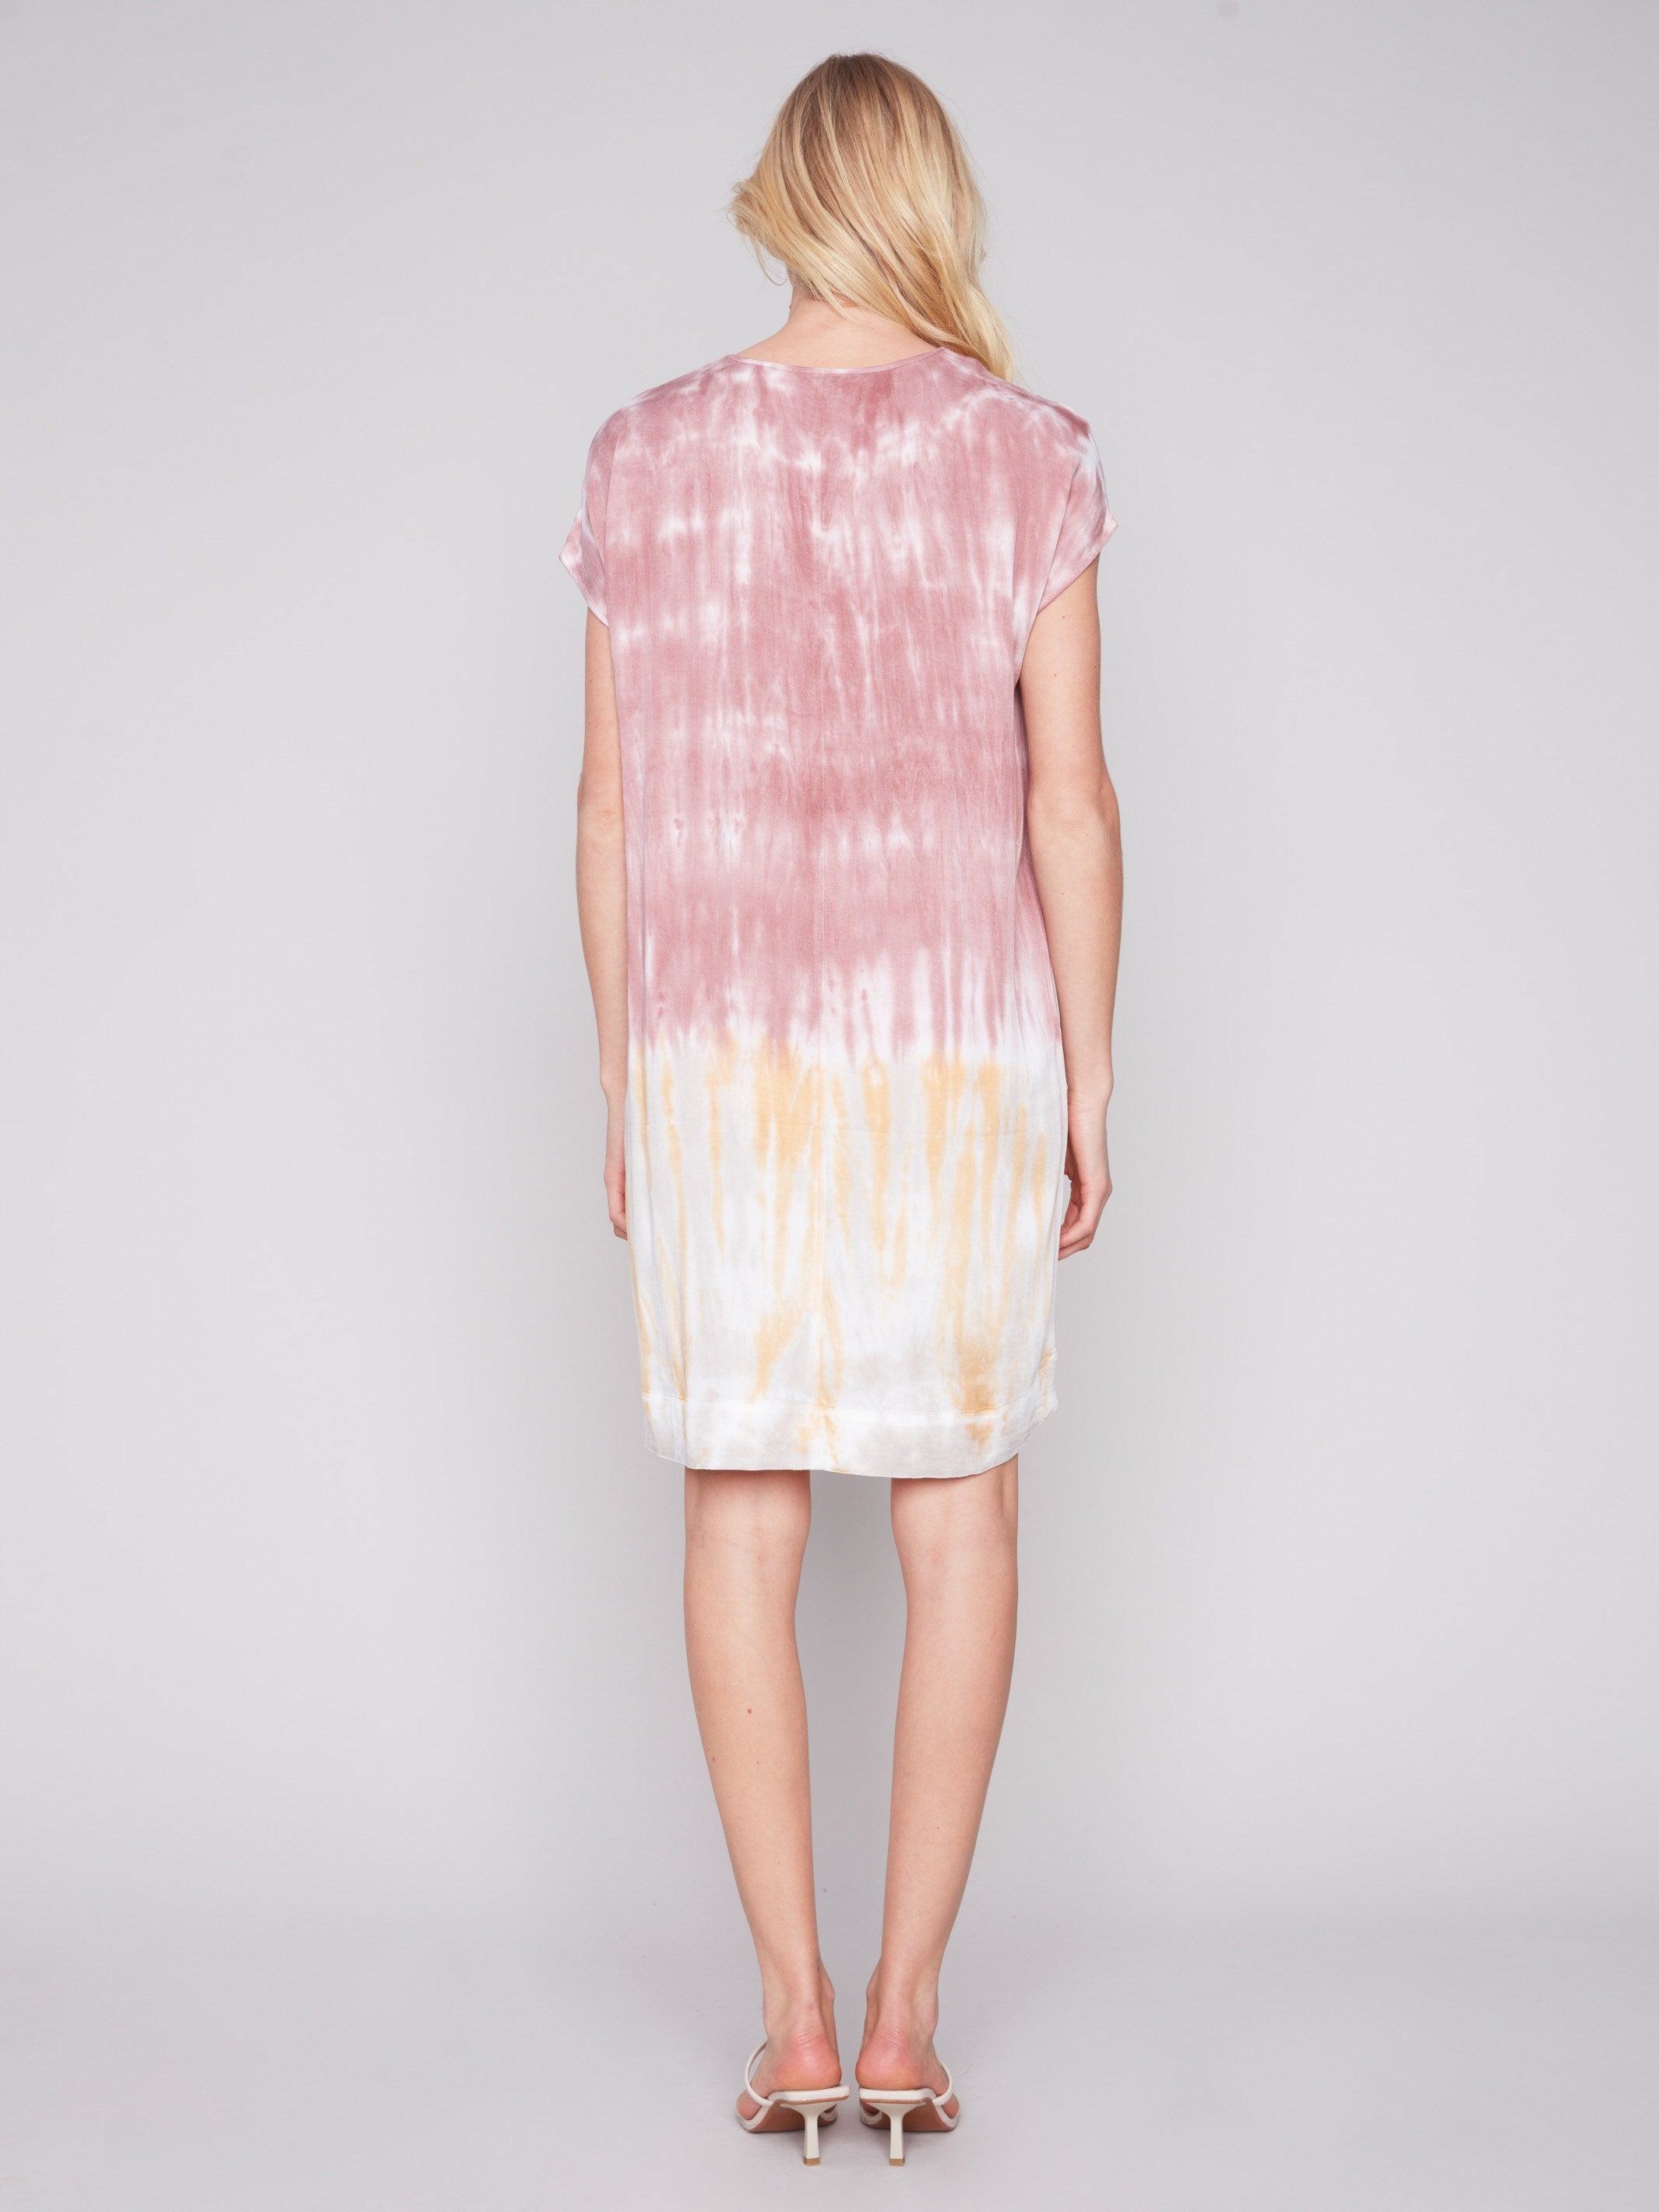 Charlie B Tie-Dye Dress with Dolman Sleeves - Woodrose - Image 4